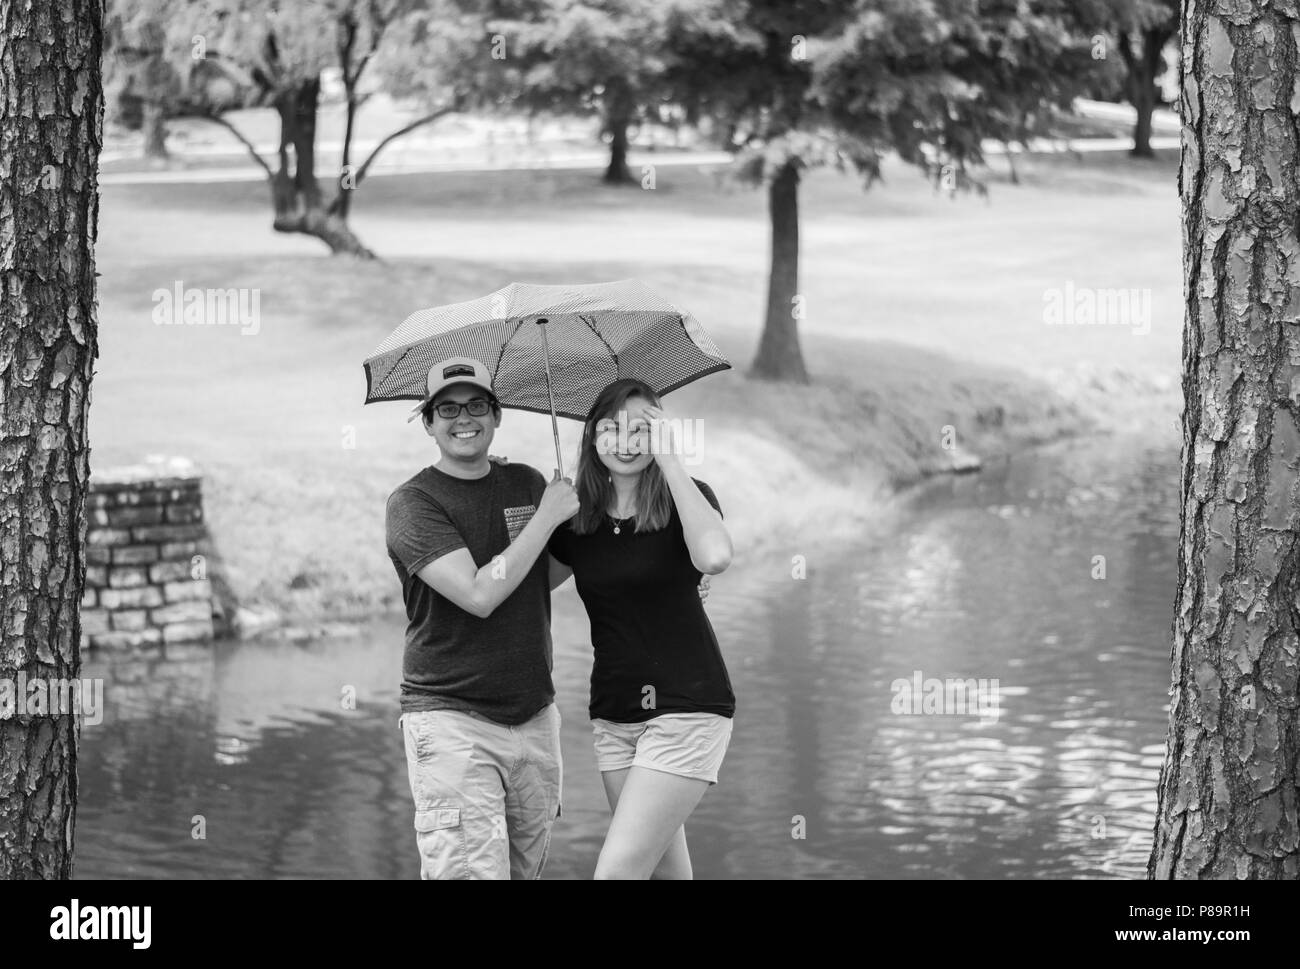 Junge Glücklich attraktives Paar draußen im Park mit Regenschirm und Bäume im Hintergrund Stockfoto